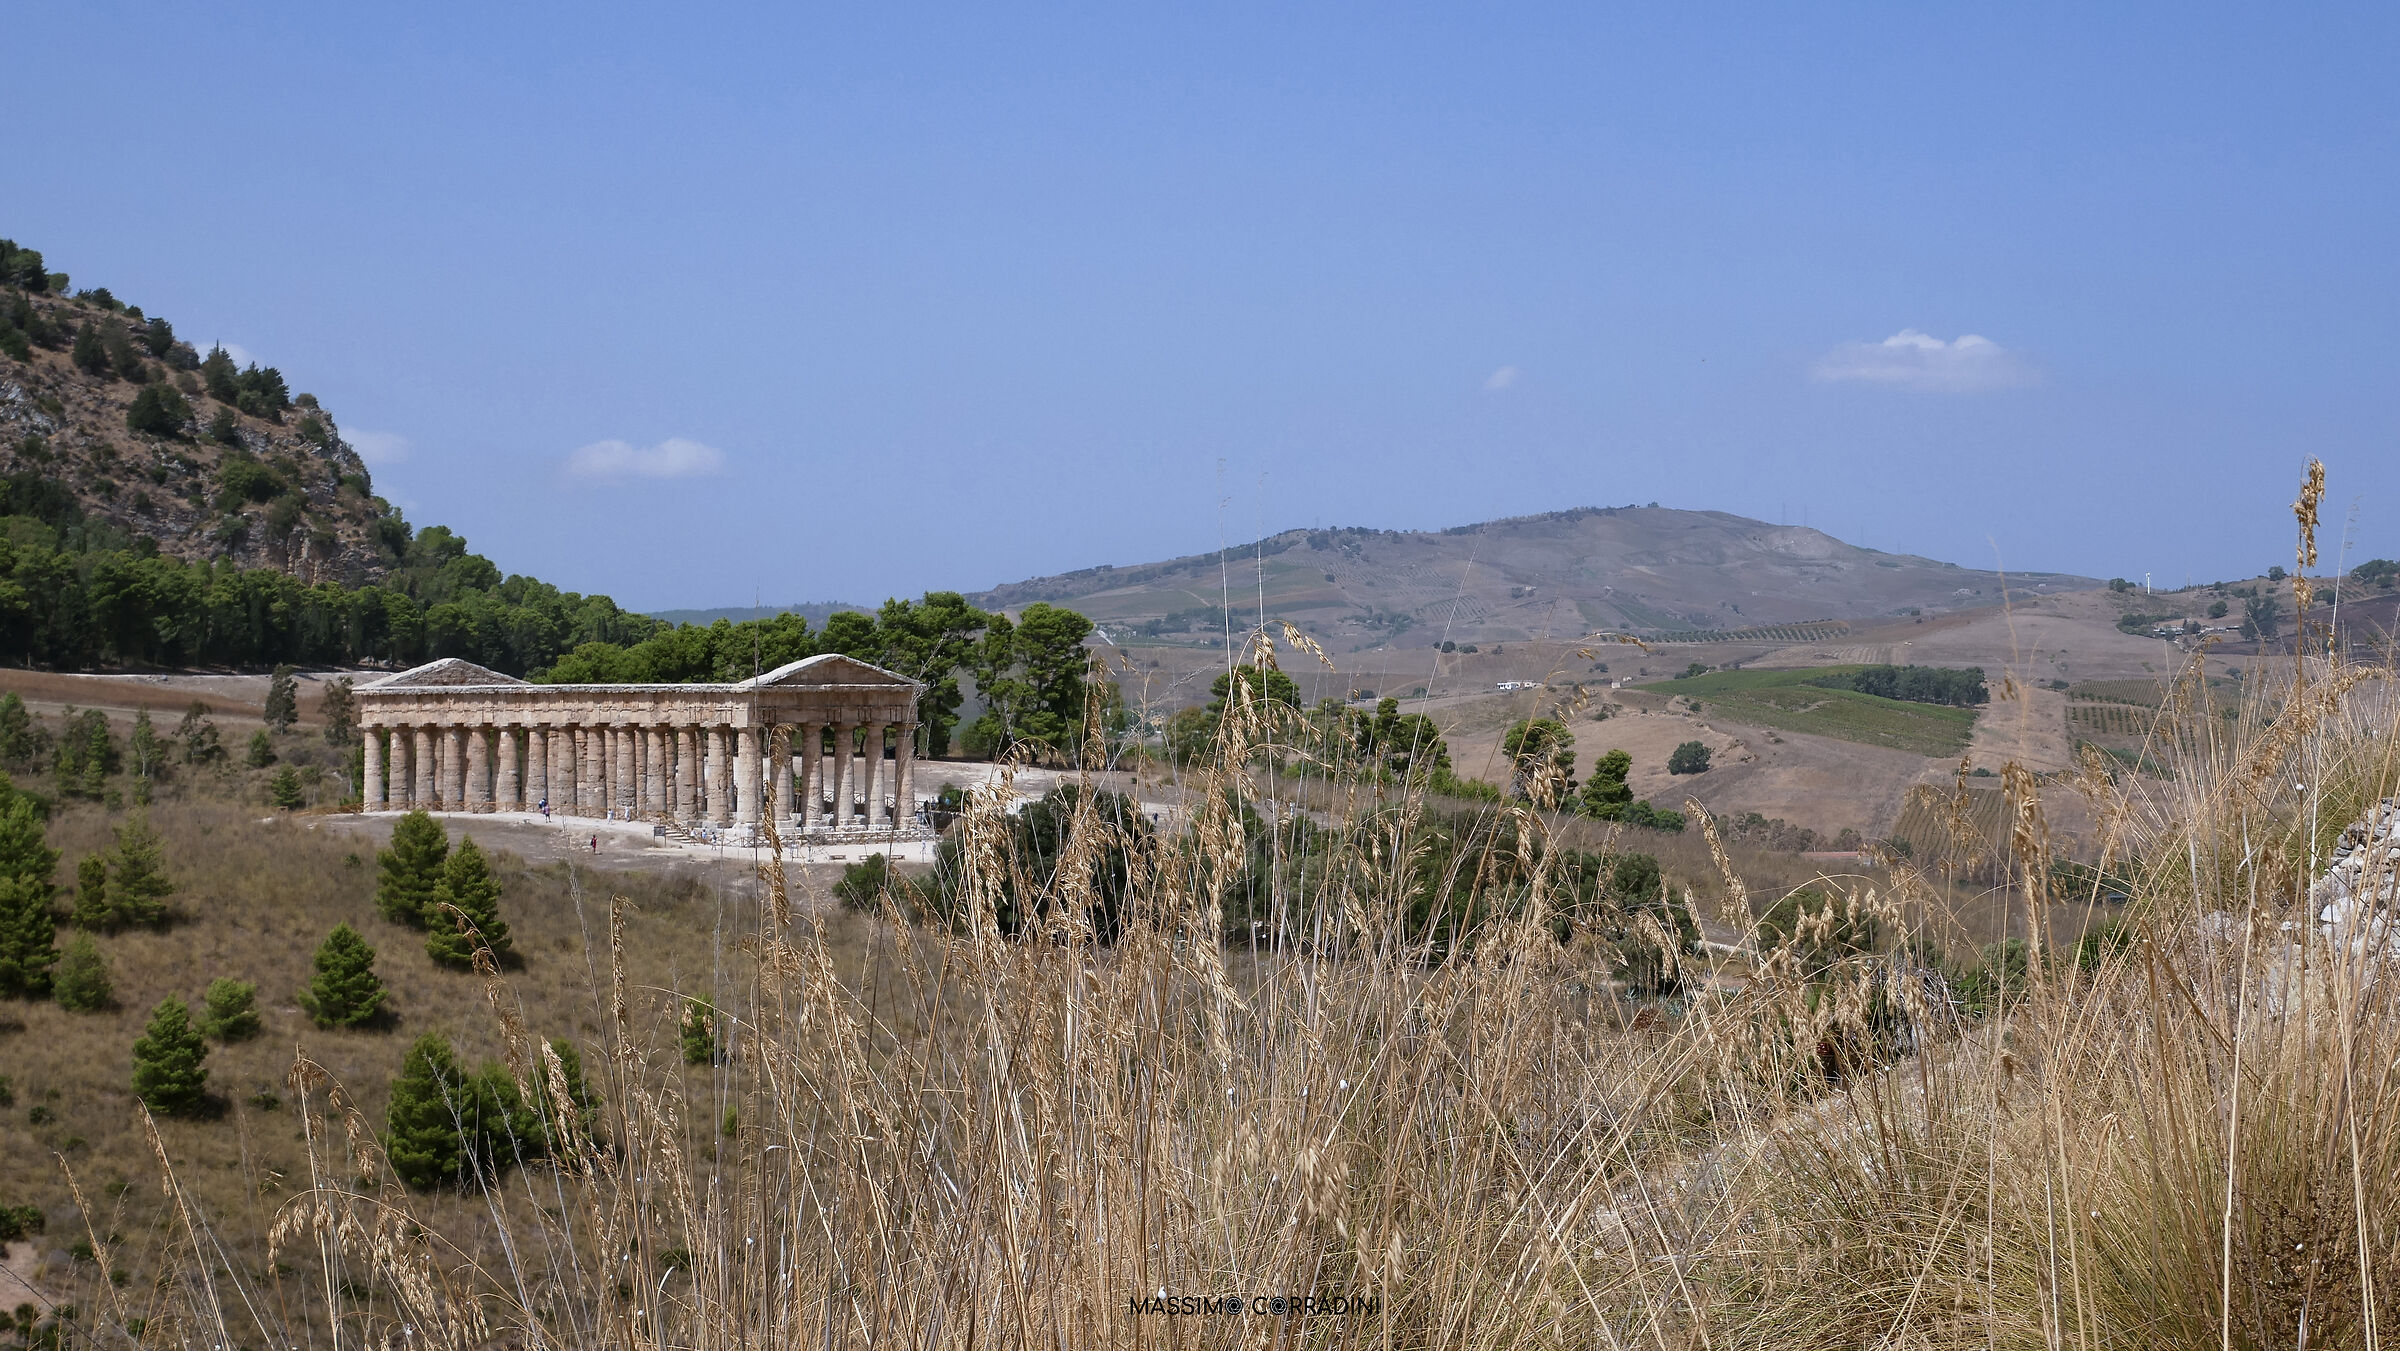 Temple of Segesta...